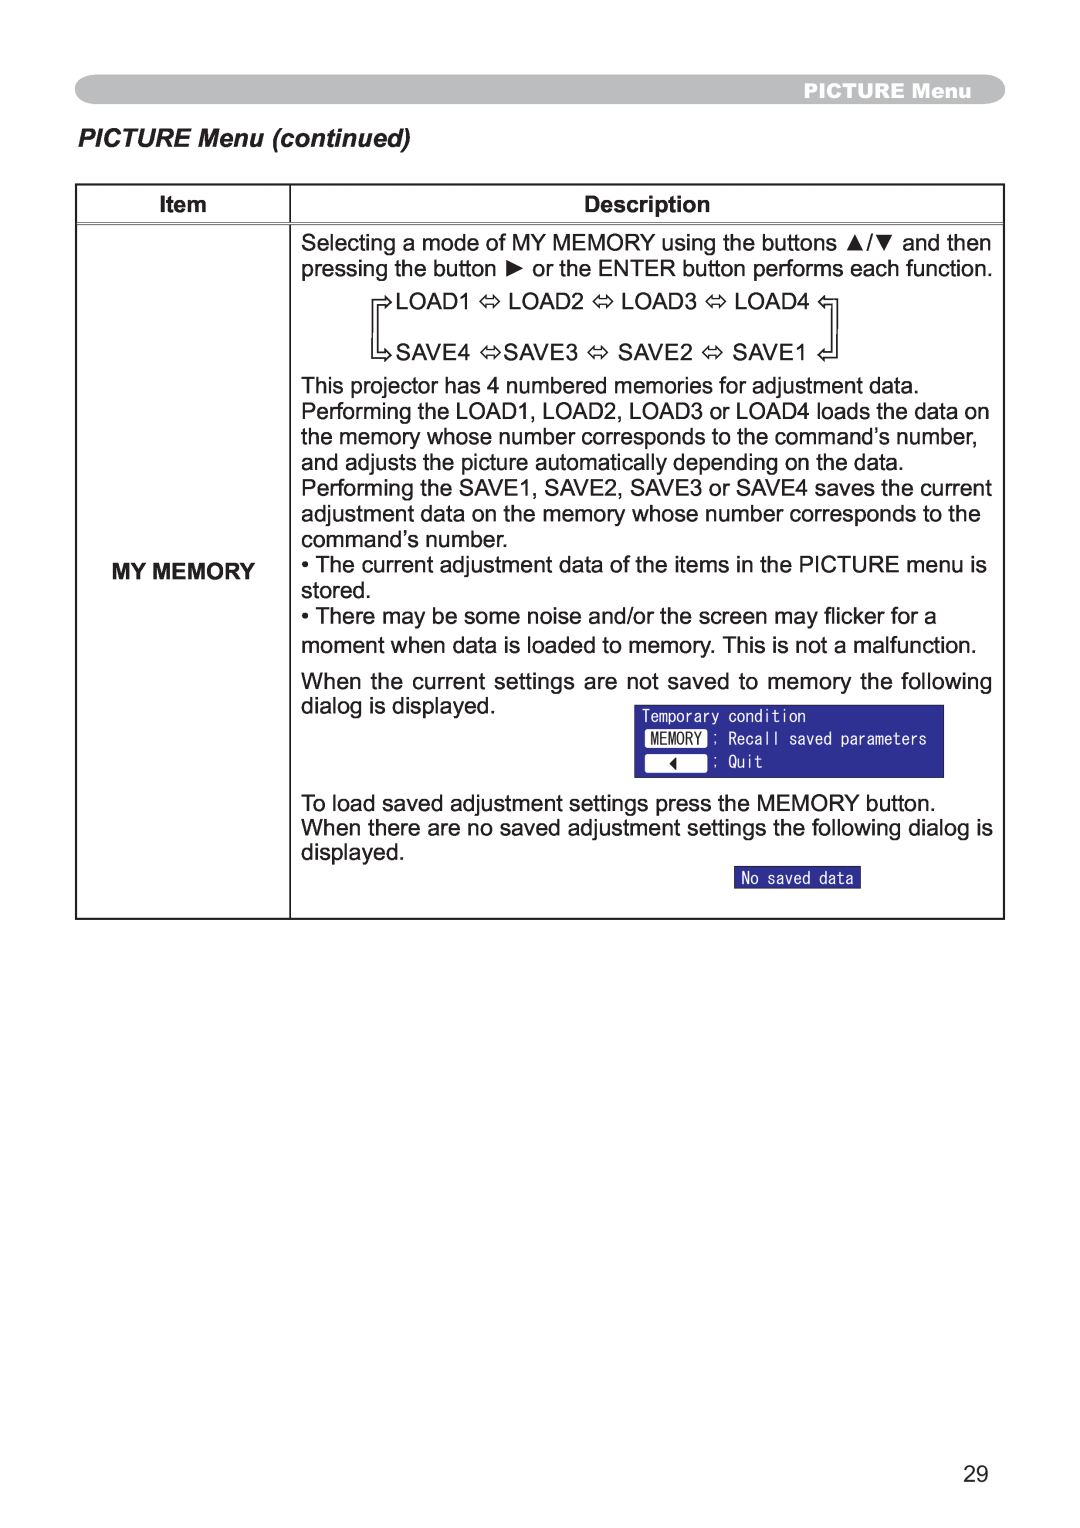 Hitachi CP-X251 user manual PICTURE Menu continued, Description, LOAD1 Ù LOAD2 Ù LOAD3 Ù LOAD4, My Memory 